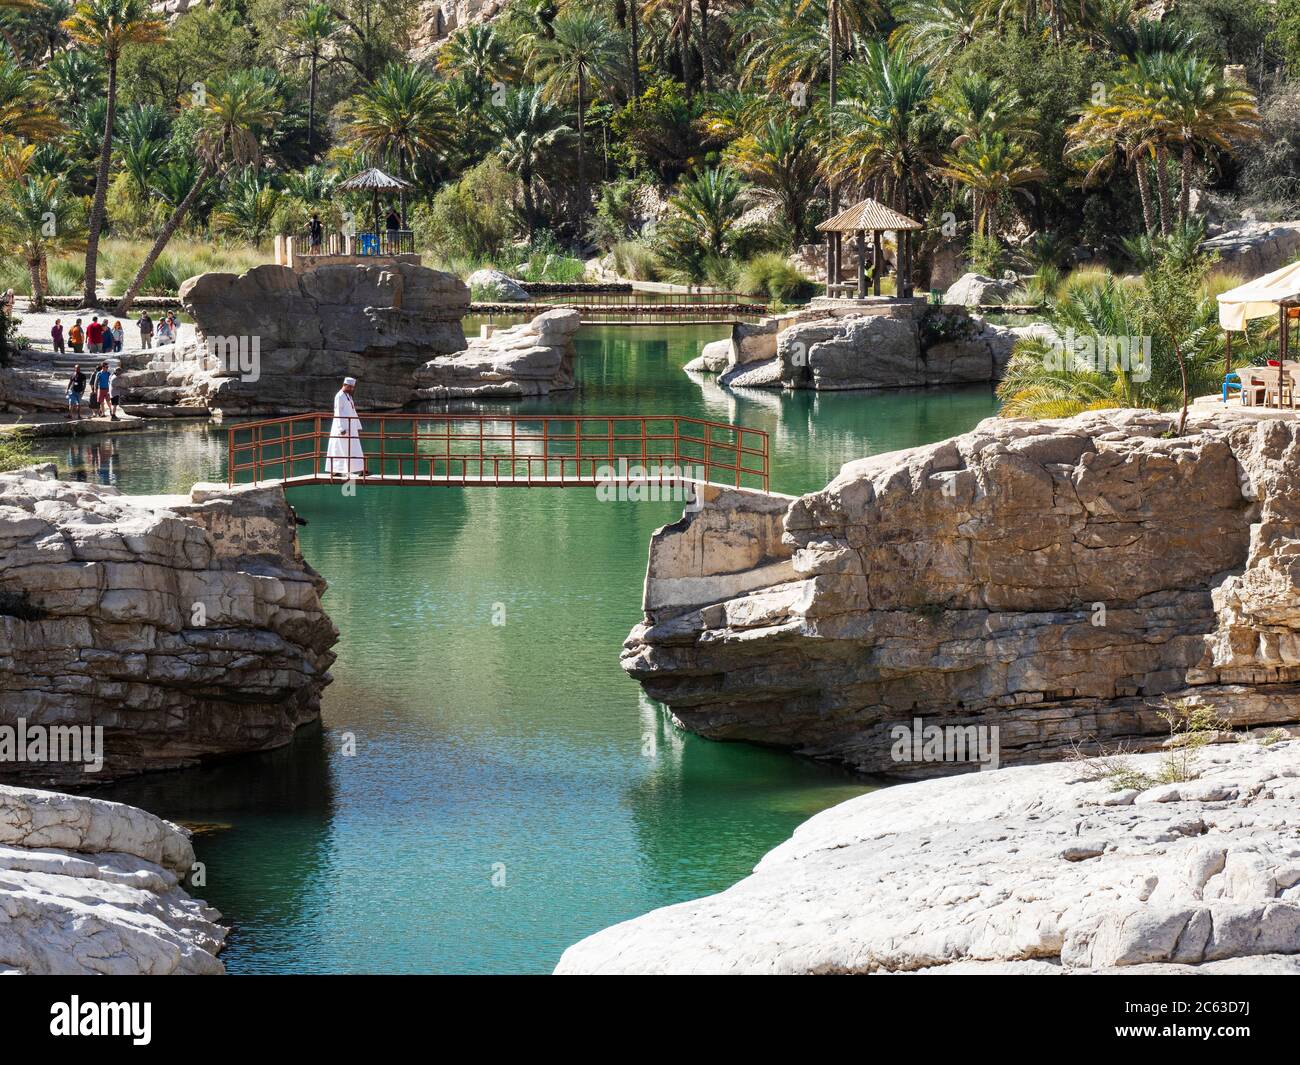 Piscine naturali formate da acque alluvionali a Wadi Bani Khalid, Sultanato dell'Oman. Foto Stock